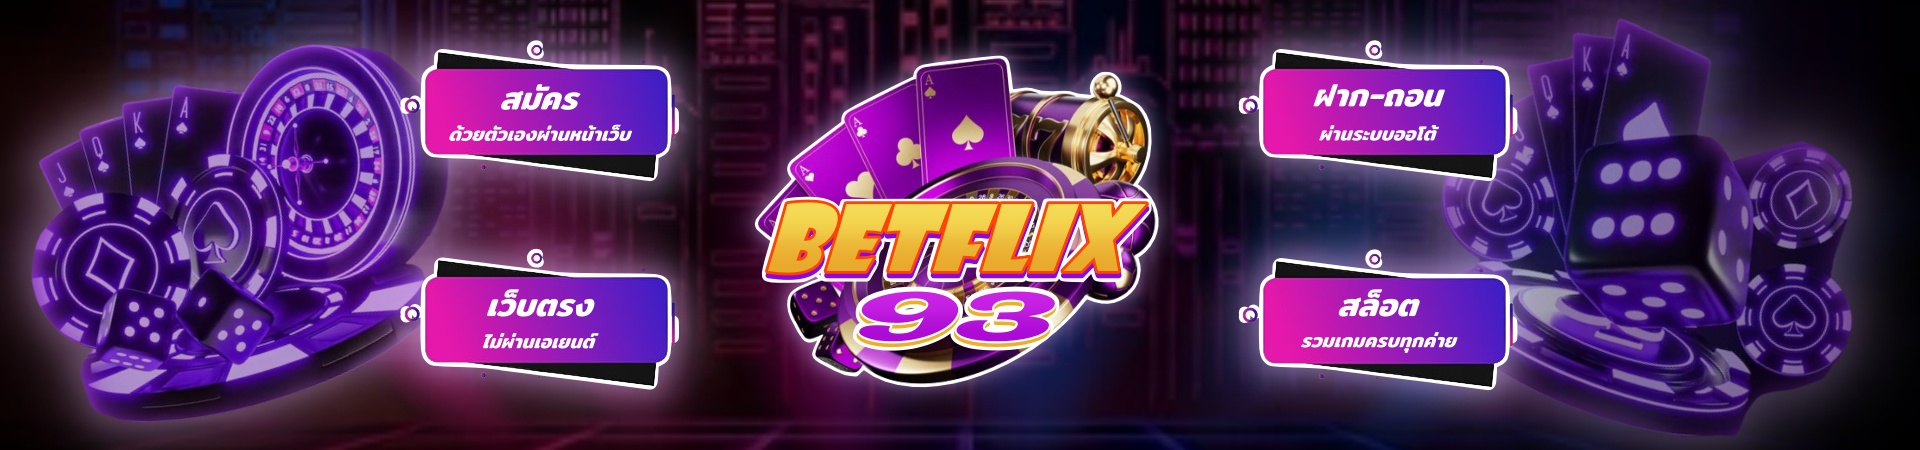 BETFLIX93 สล็อตเว็บตรง อันดับ1